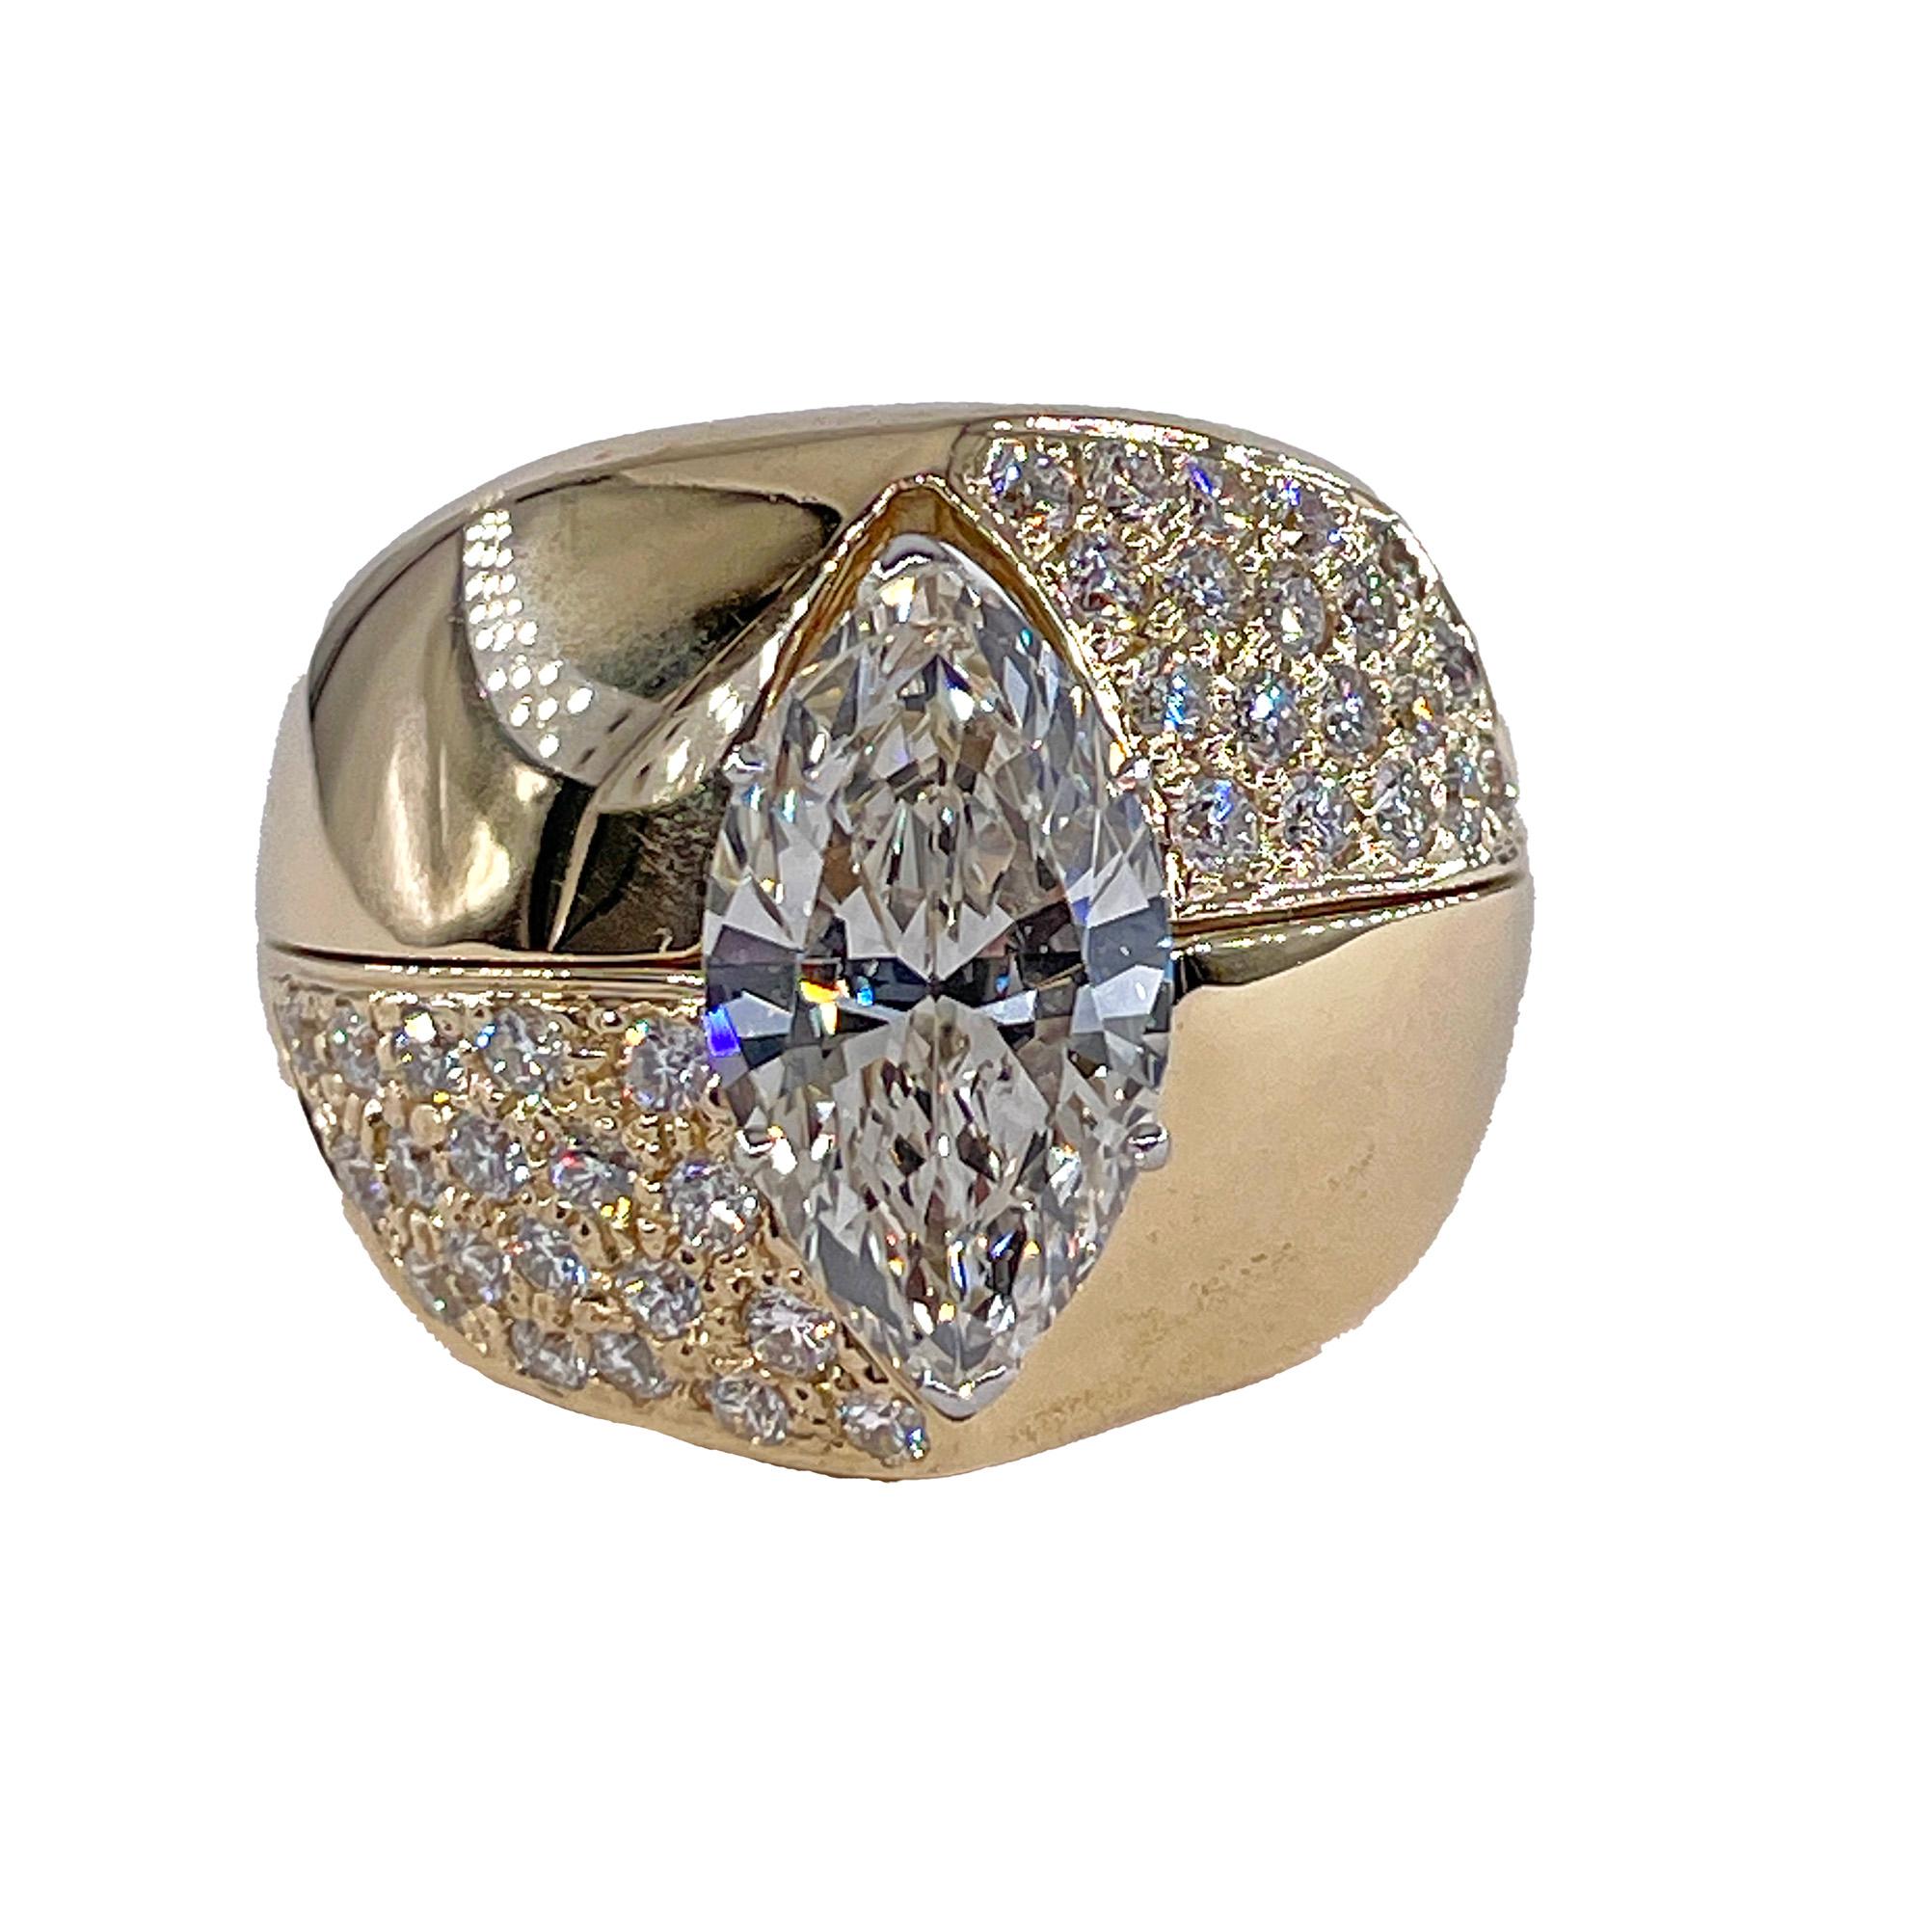 Vintage Diamond Engagement Three Stone Marquise Diamond Platinum Ring With Fitted 18K Yellow Gold Diamond Jacket (Bague de fiançailles à trois pierres et marquise en diamant en platine avec un manteau en or jaune 18K)

L'